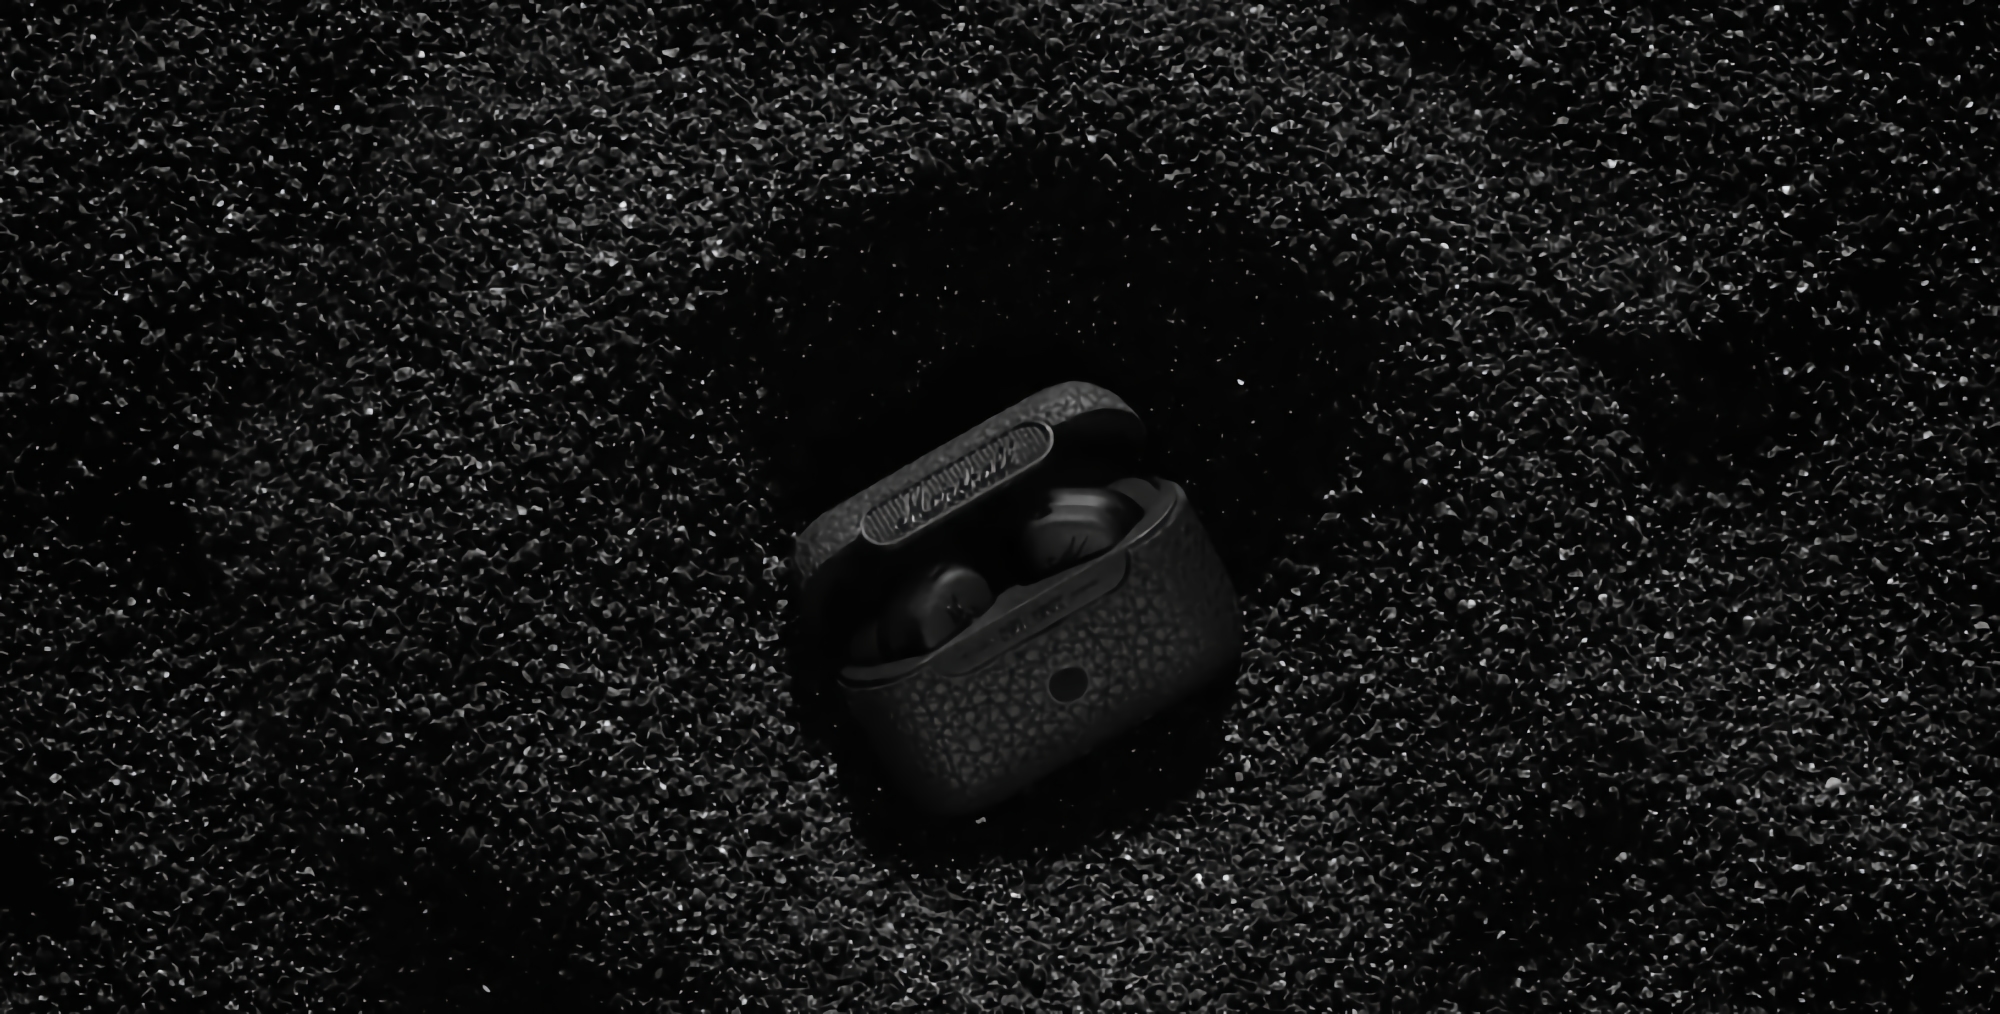 En honor al 60º aniversario de la compañía: Marshall presentó una versión especial de los auriculares TWS Motif ANC en el color Negro Diamante